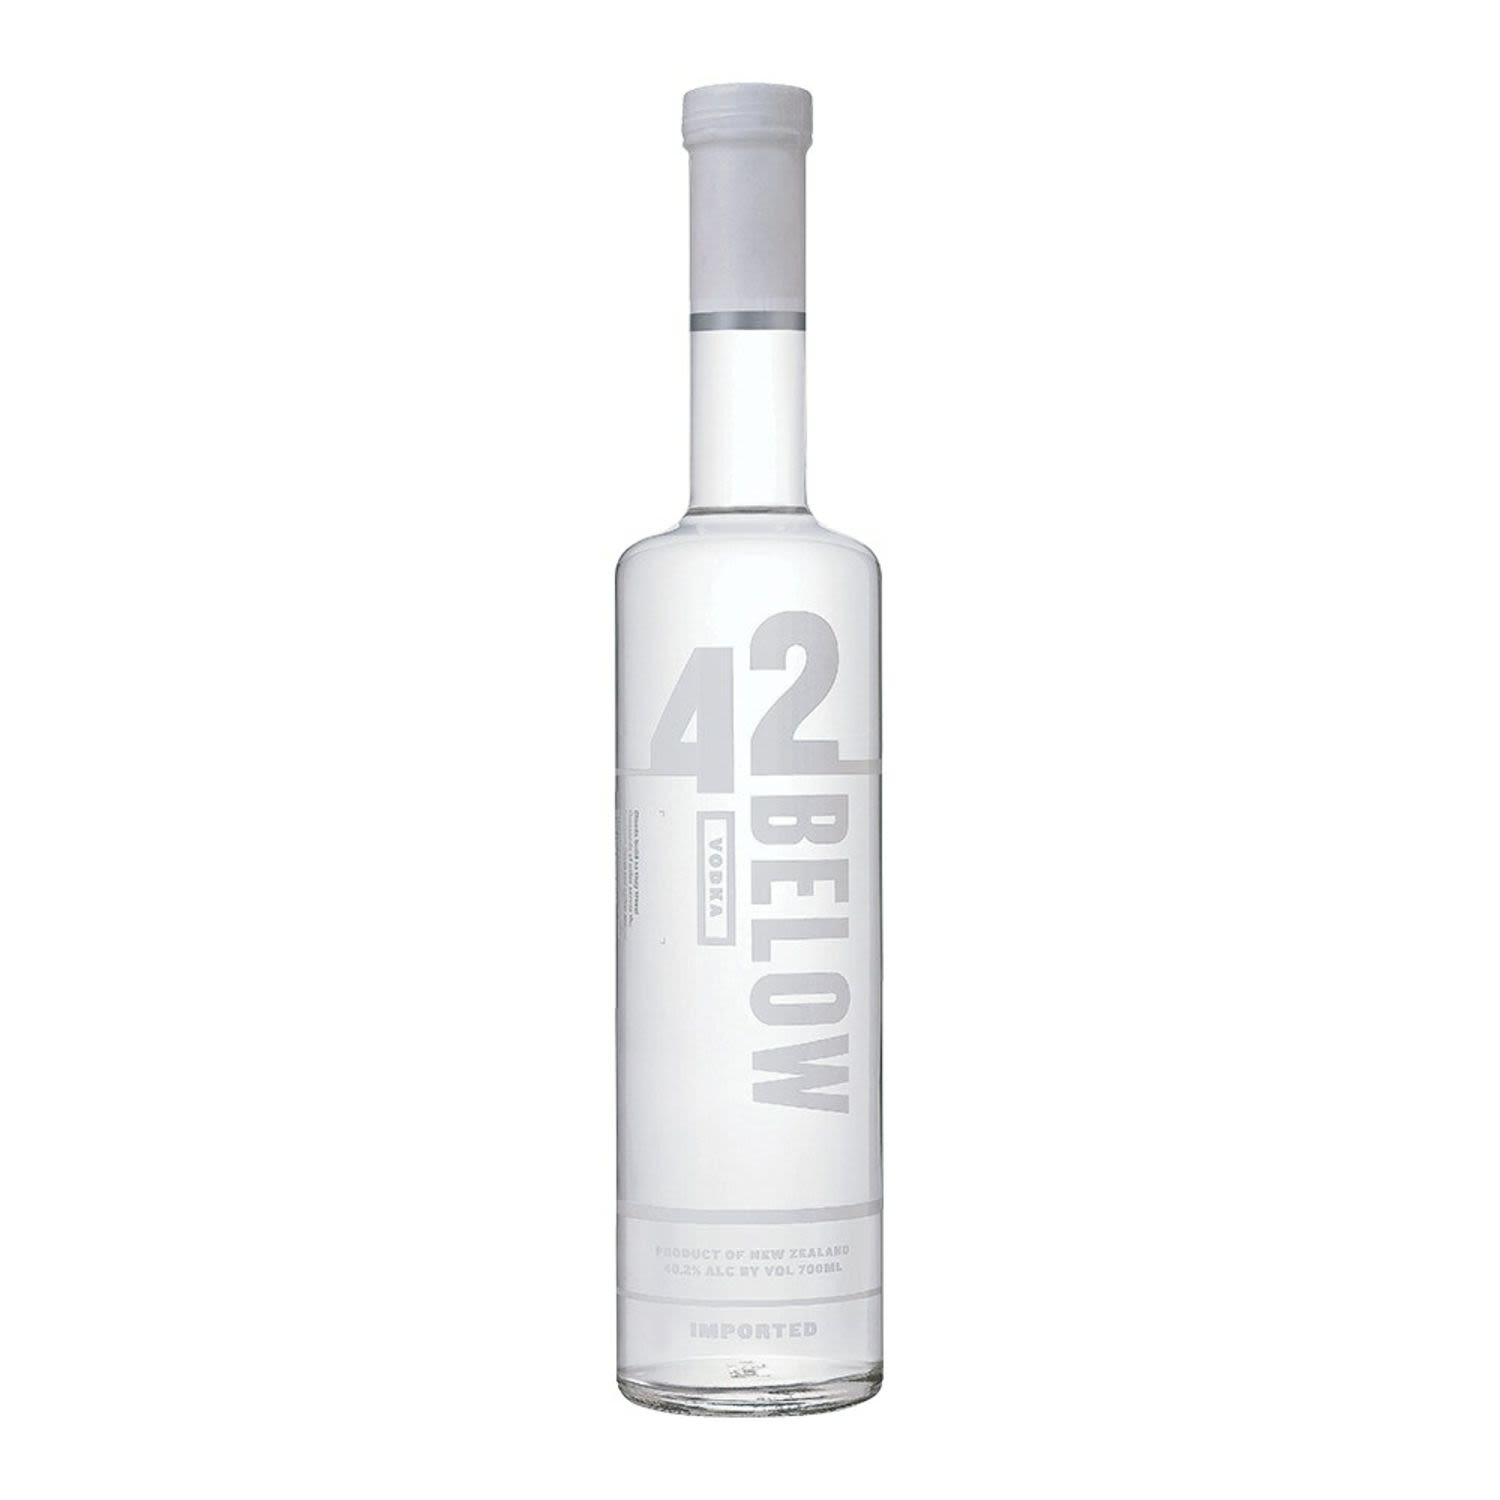 42 Below Pure Vodka 700mL Bottle